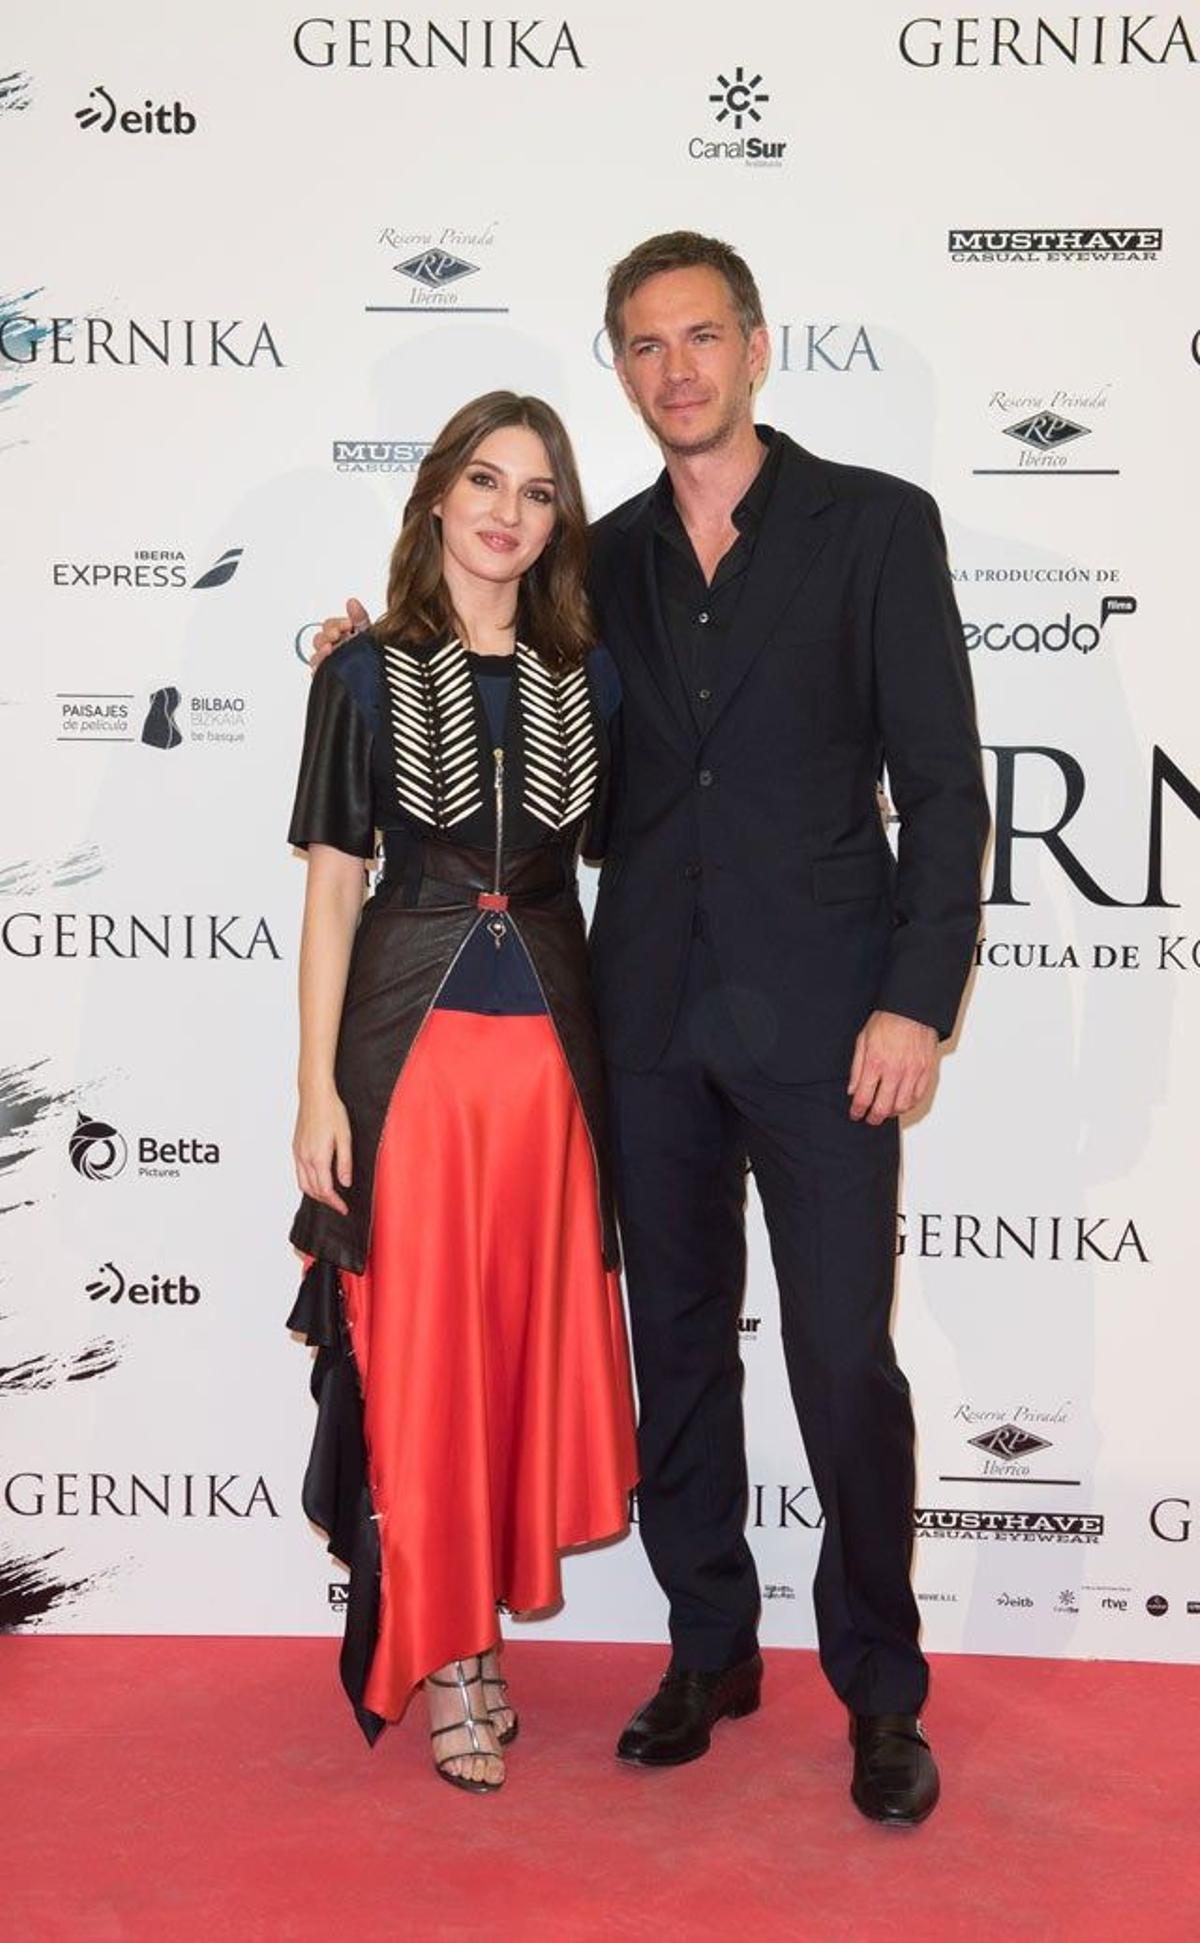 María Valverde y James D'Arcy en el estreno de Gernika en Madrid